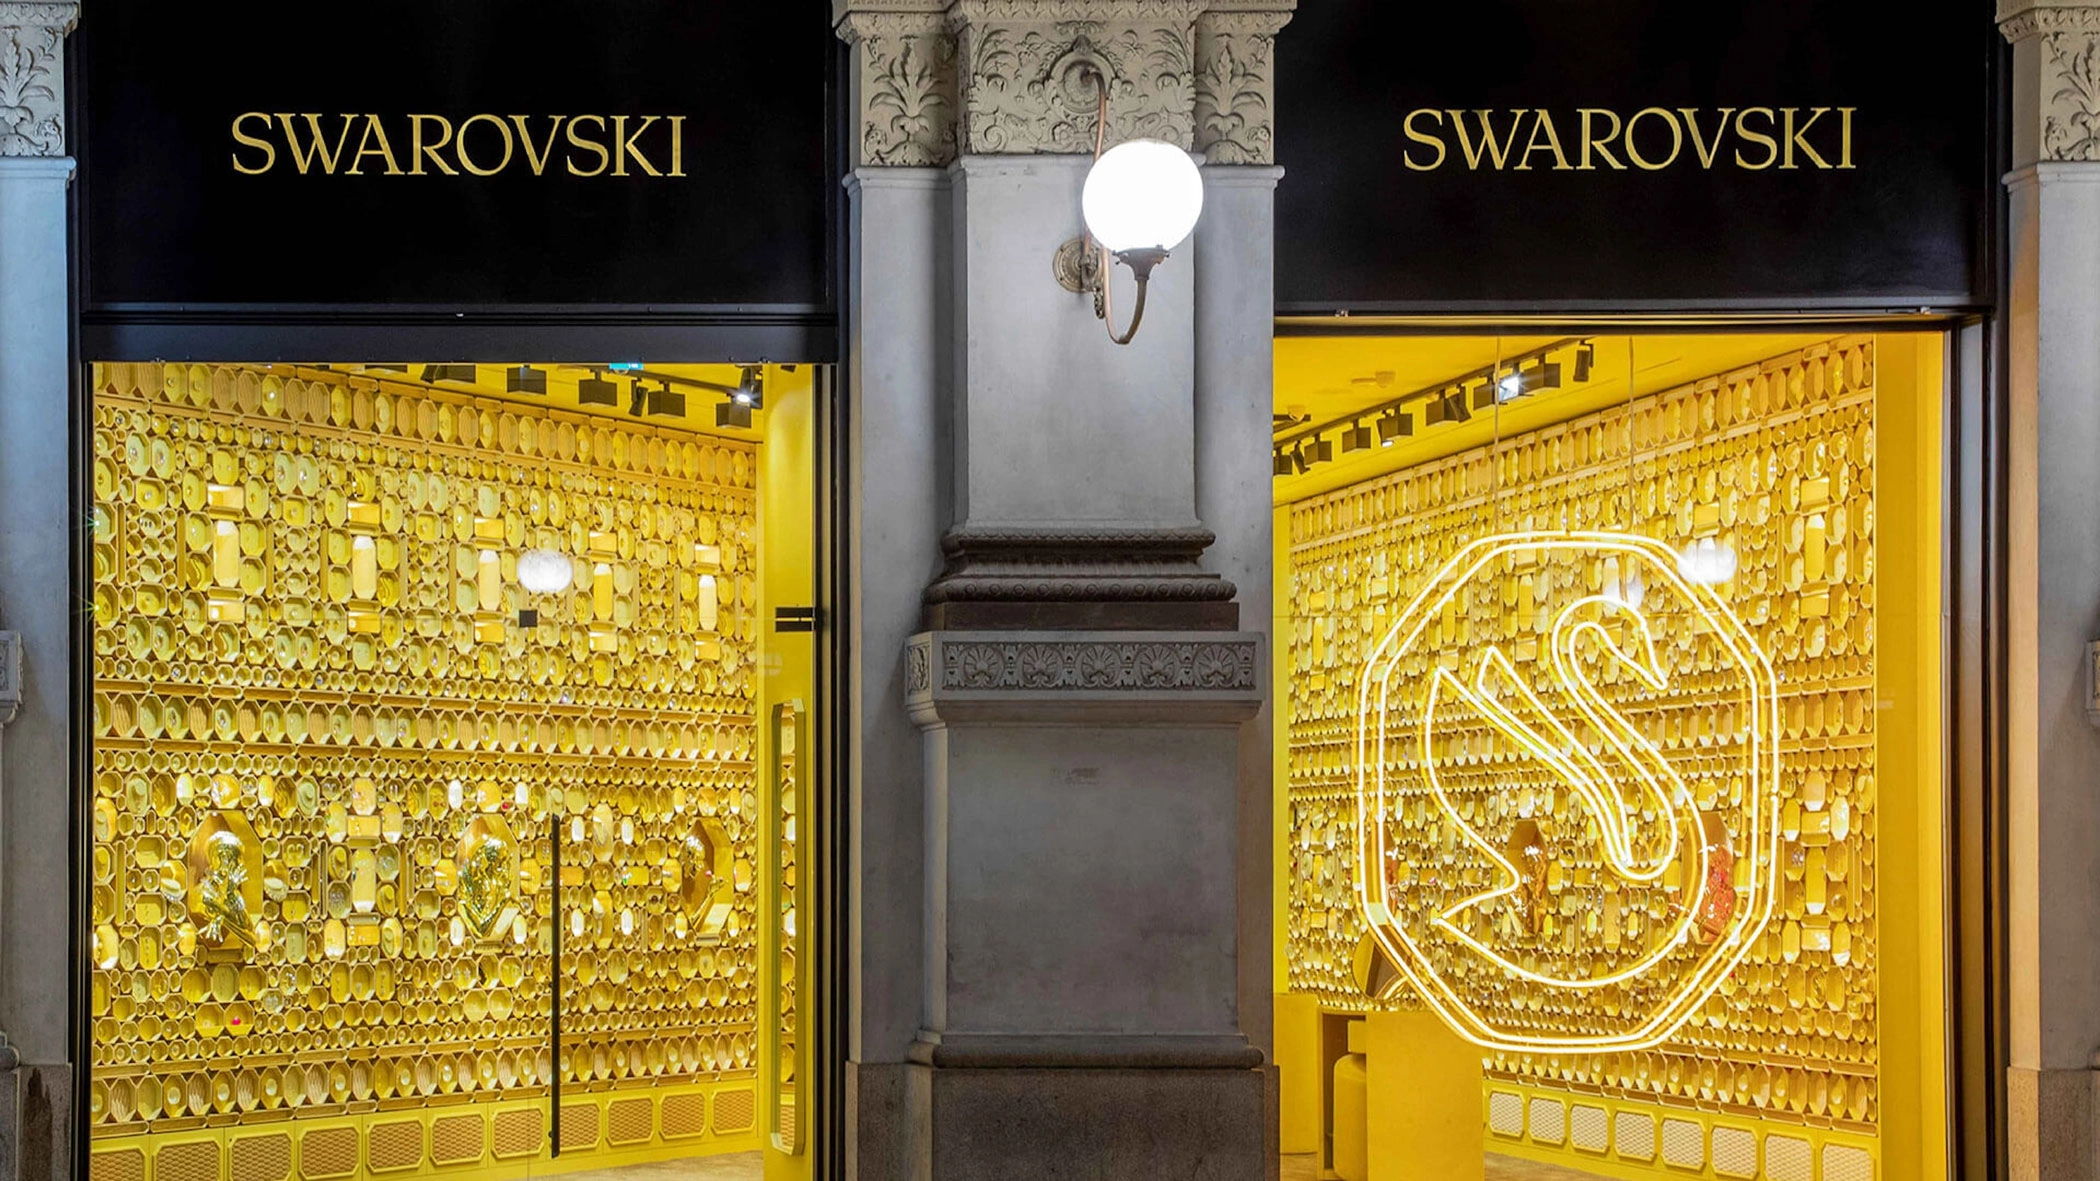 Swarovski lança reposicionamento global em pop-up no Rio de Janeiro -  Mercado&Consumo